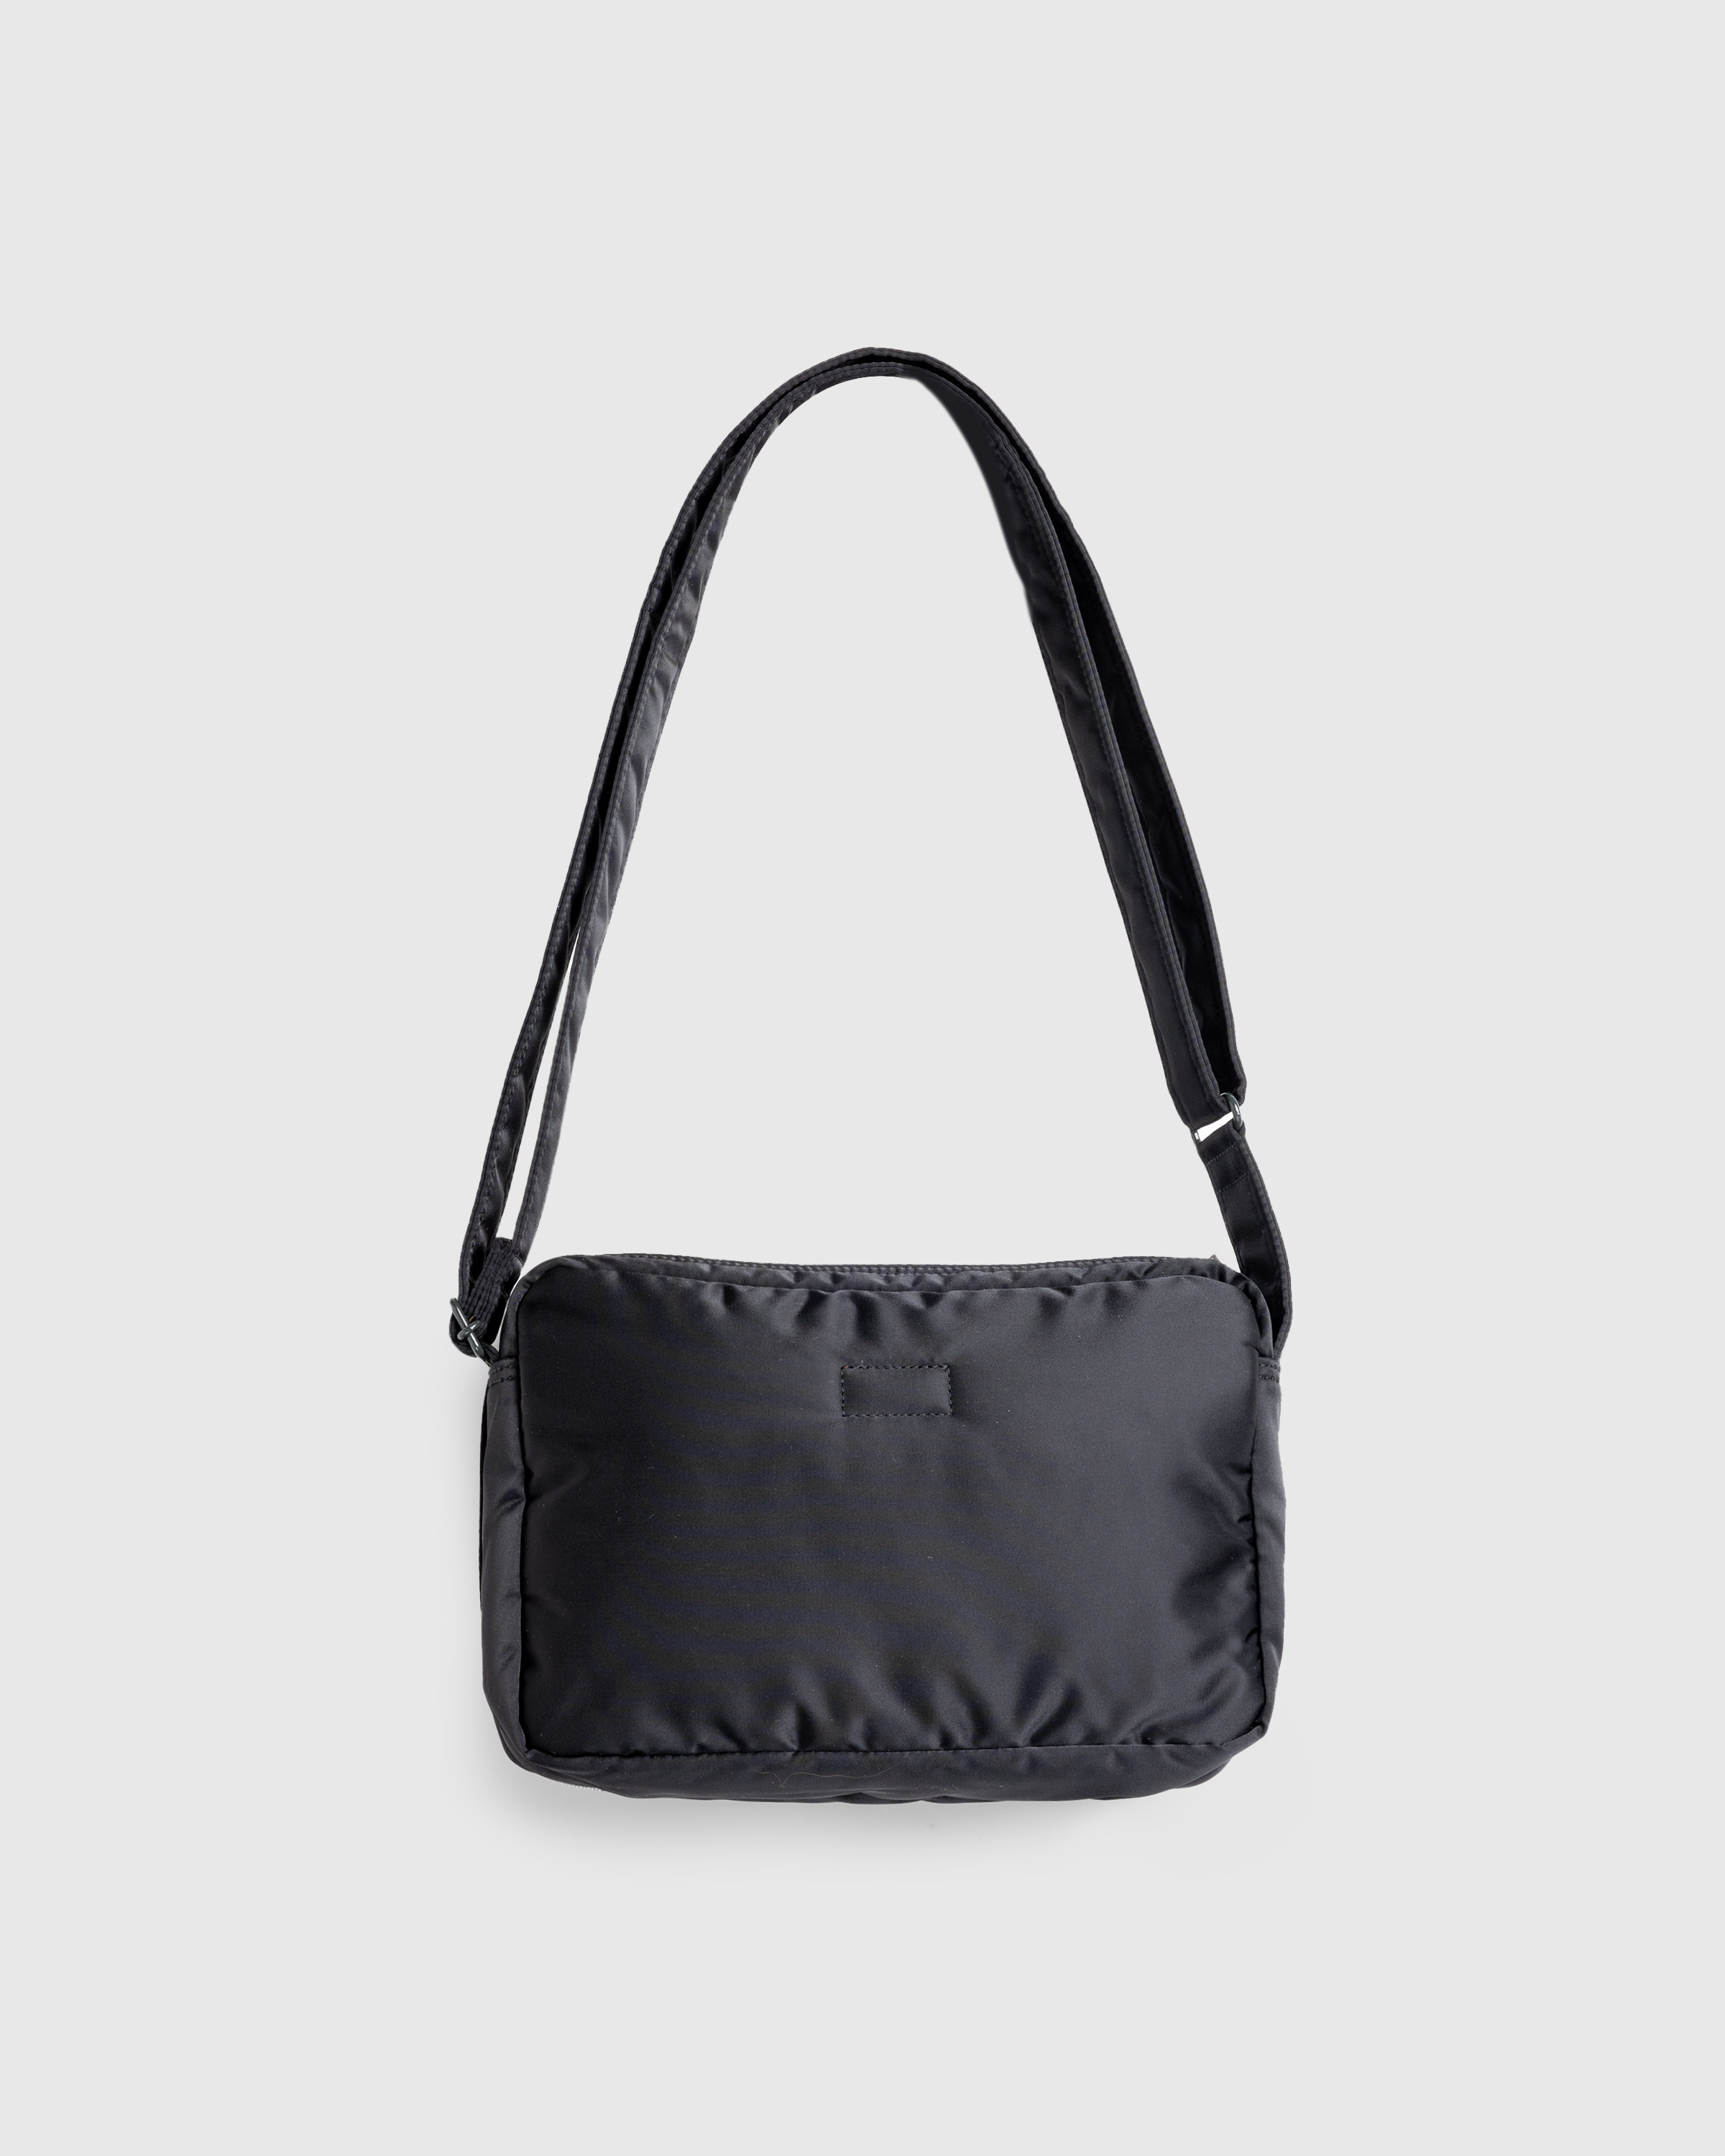 Porter-Yoshida & Co. – Tanker Shoulder Bag Black - Shoulder Bags - Black - Image 2